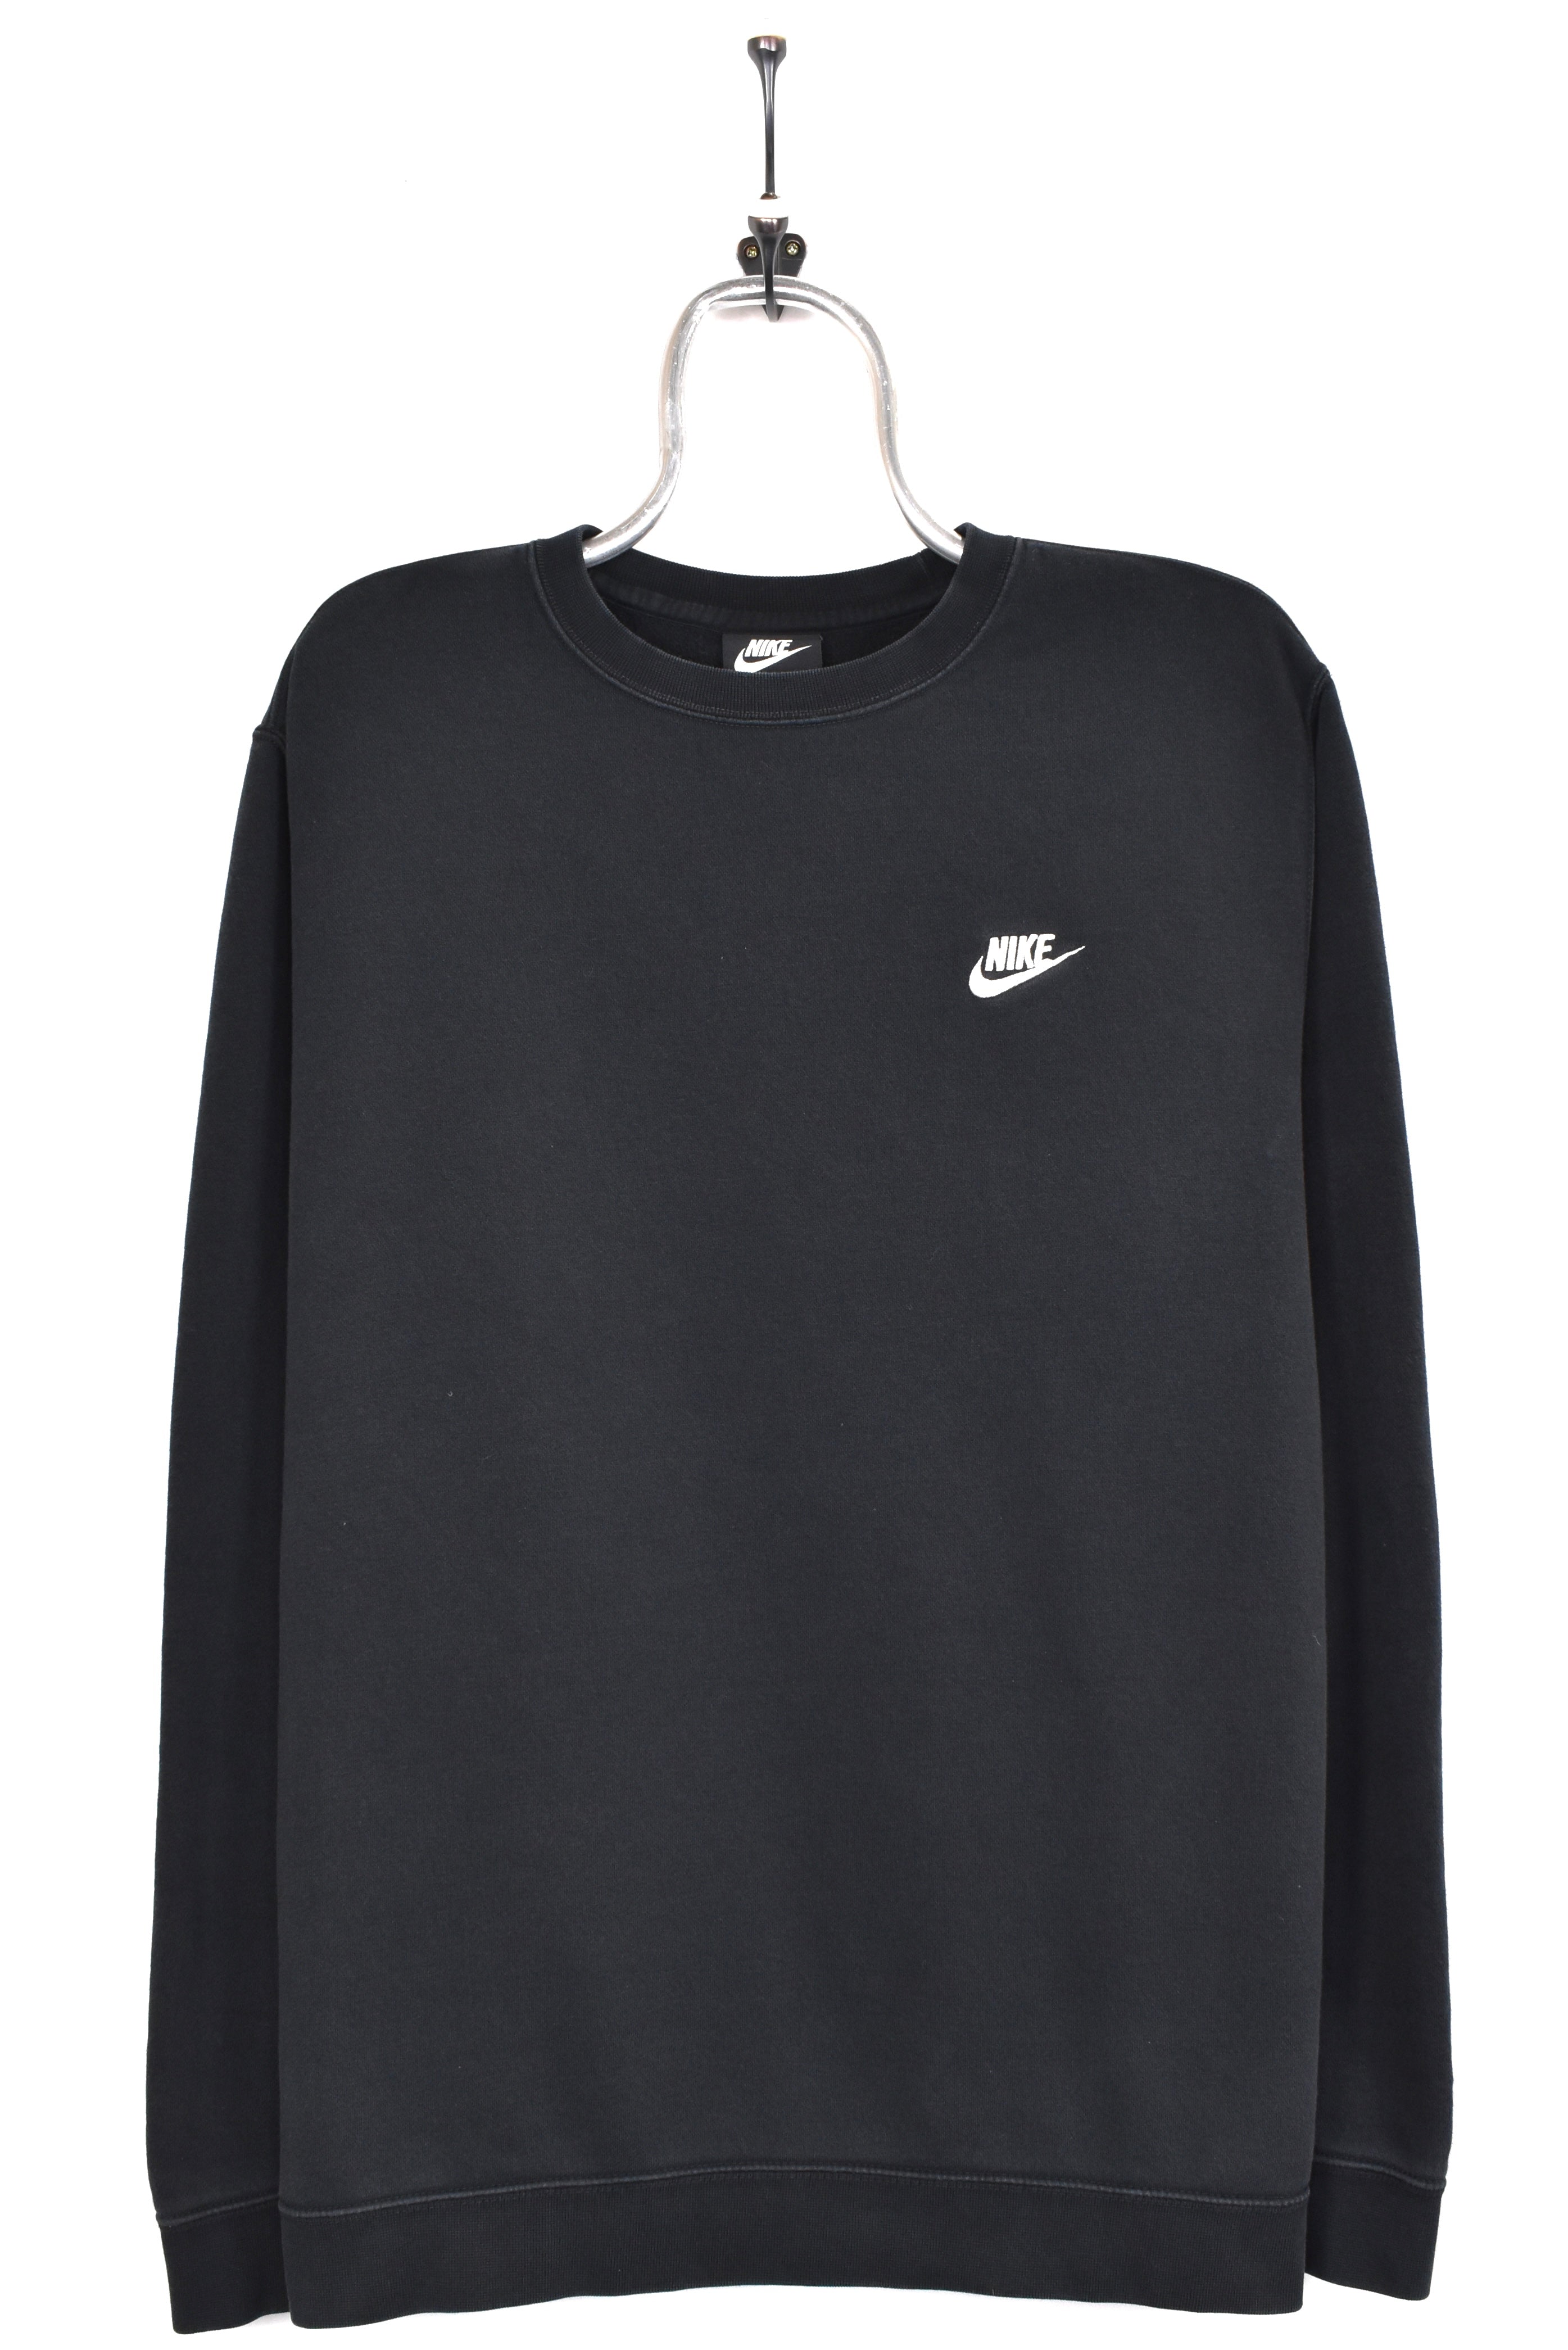 Vintage Nike sweatshirt, black embroidered crewneck - AU XL NIKE